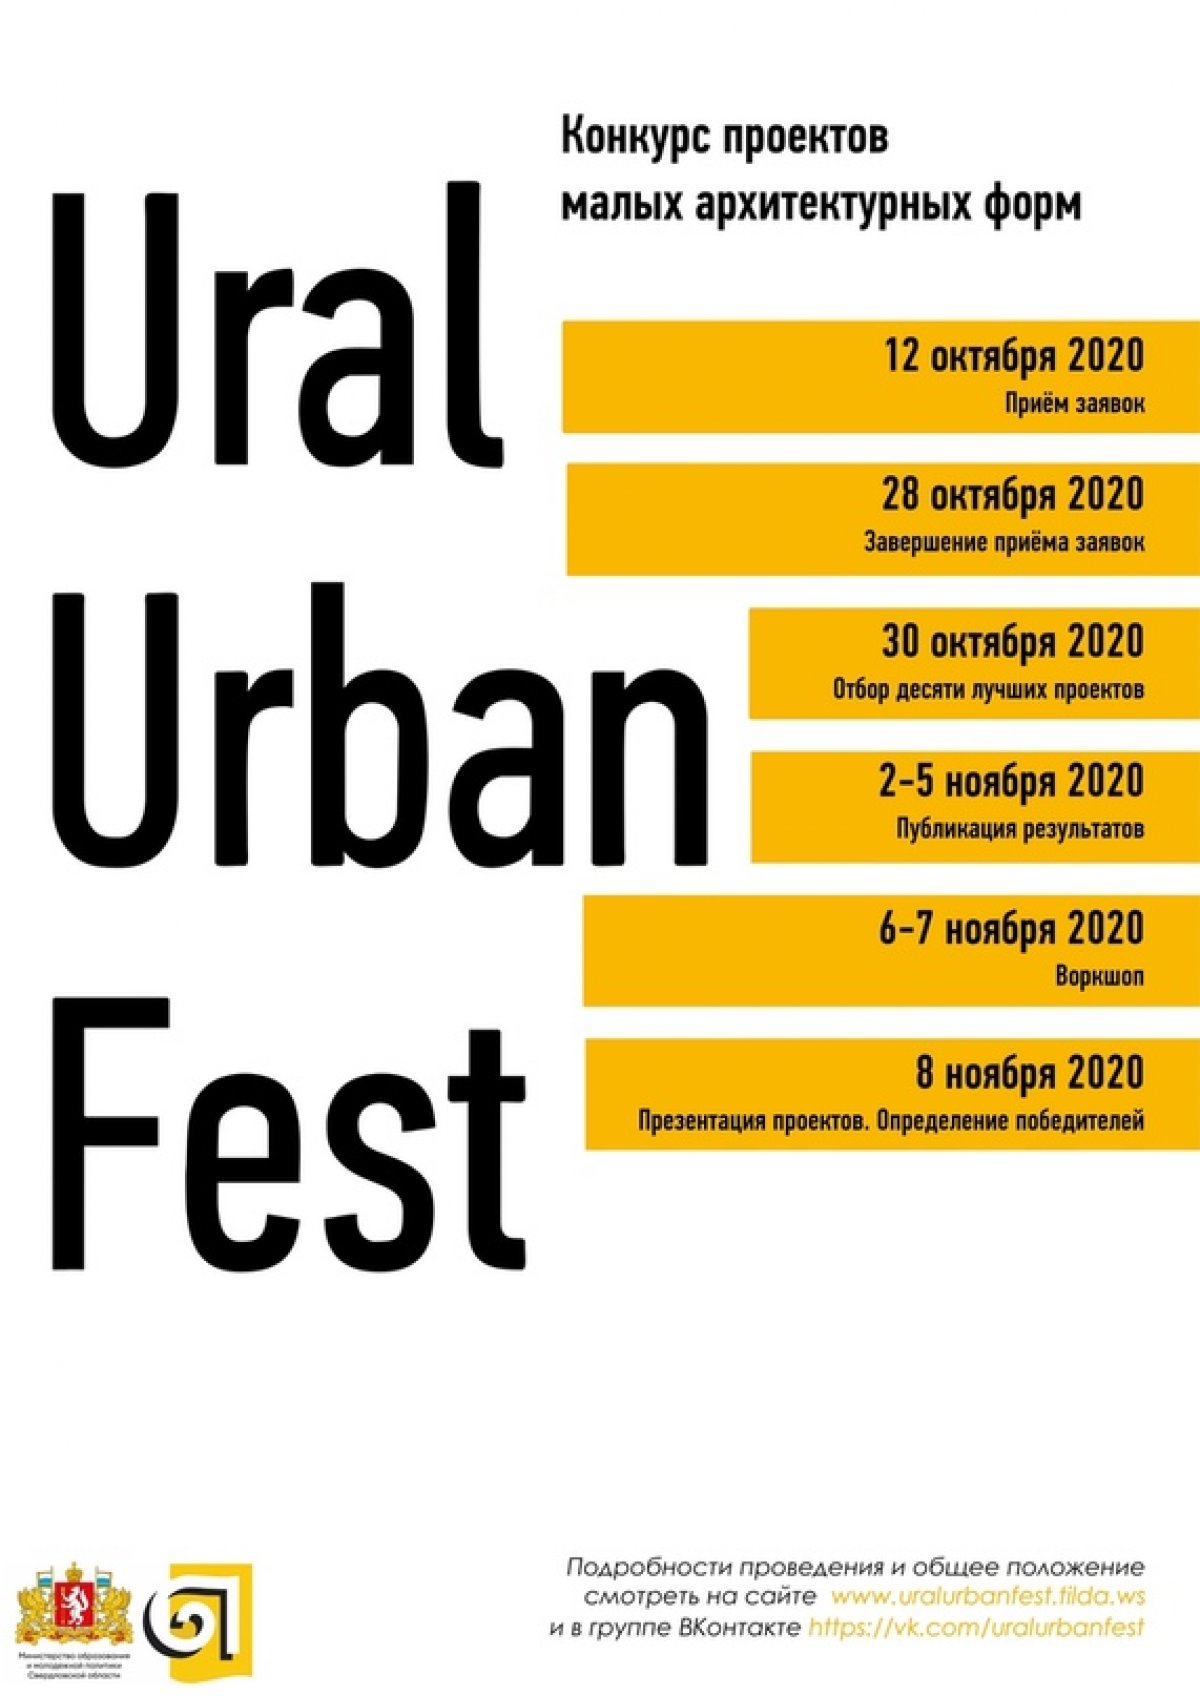 С 6 по 8 ноября пройдёт конкурс малых архитектурных форм из дерева в рамках I Городского фестиваля малых архитектурных форм «UralUrbanFest». Конкурс будет состоять из двух этапов: отборочного и заключительного.